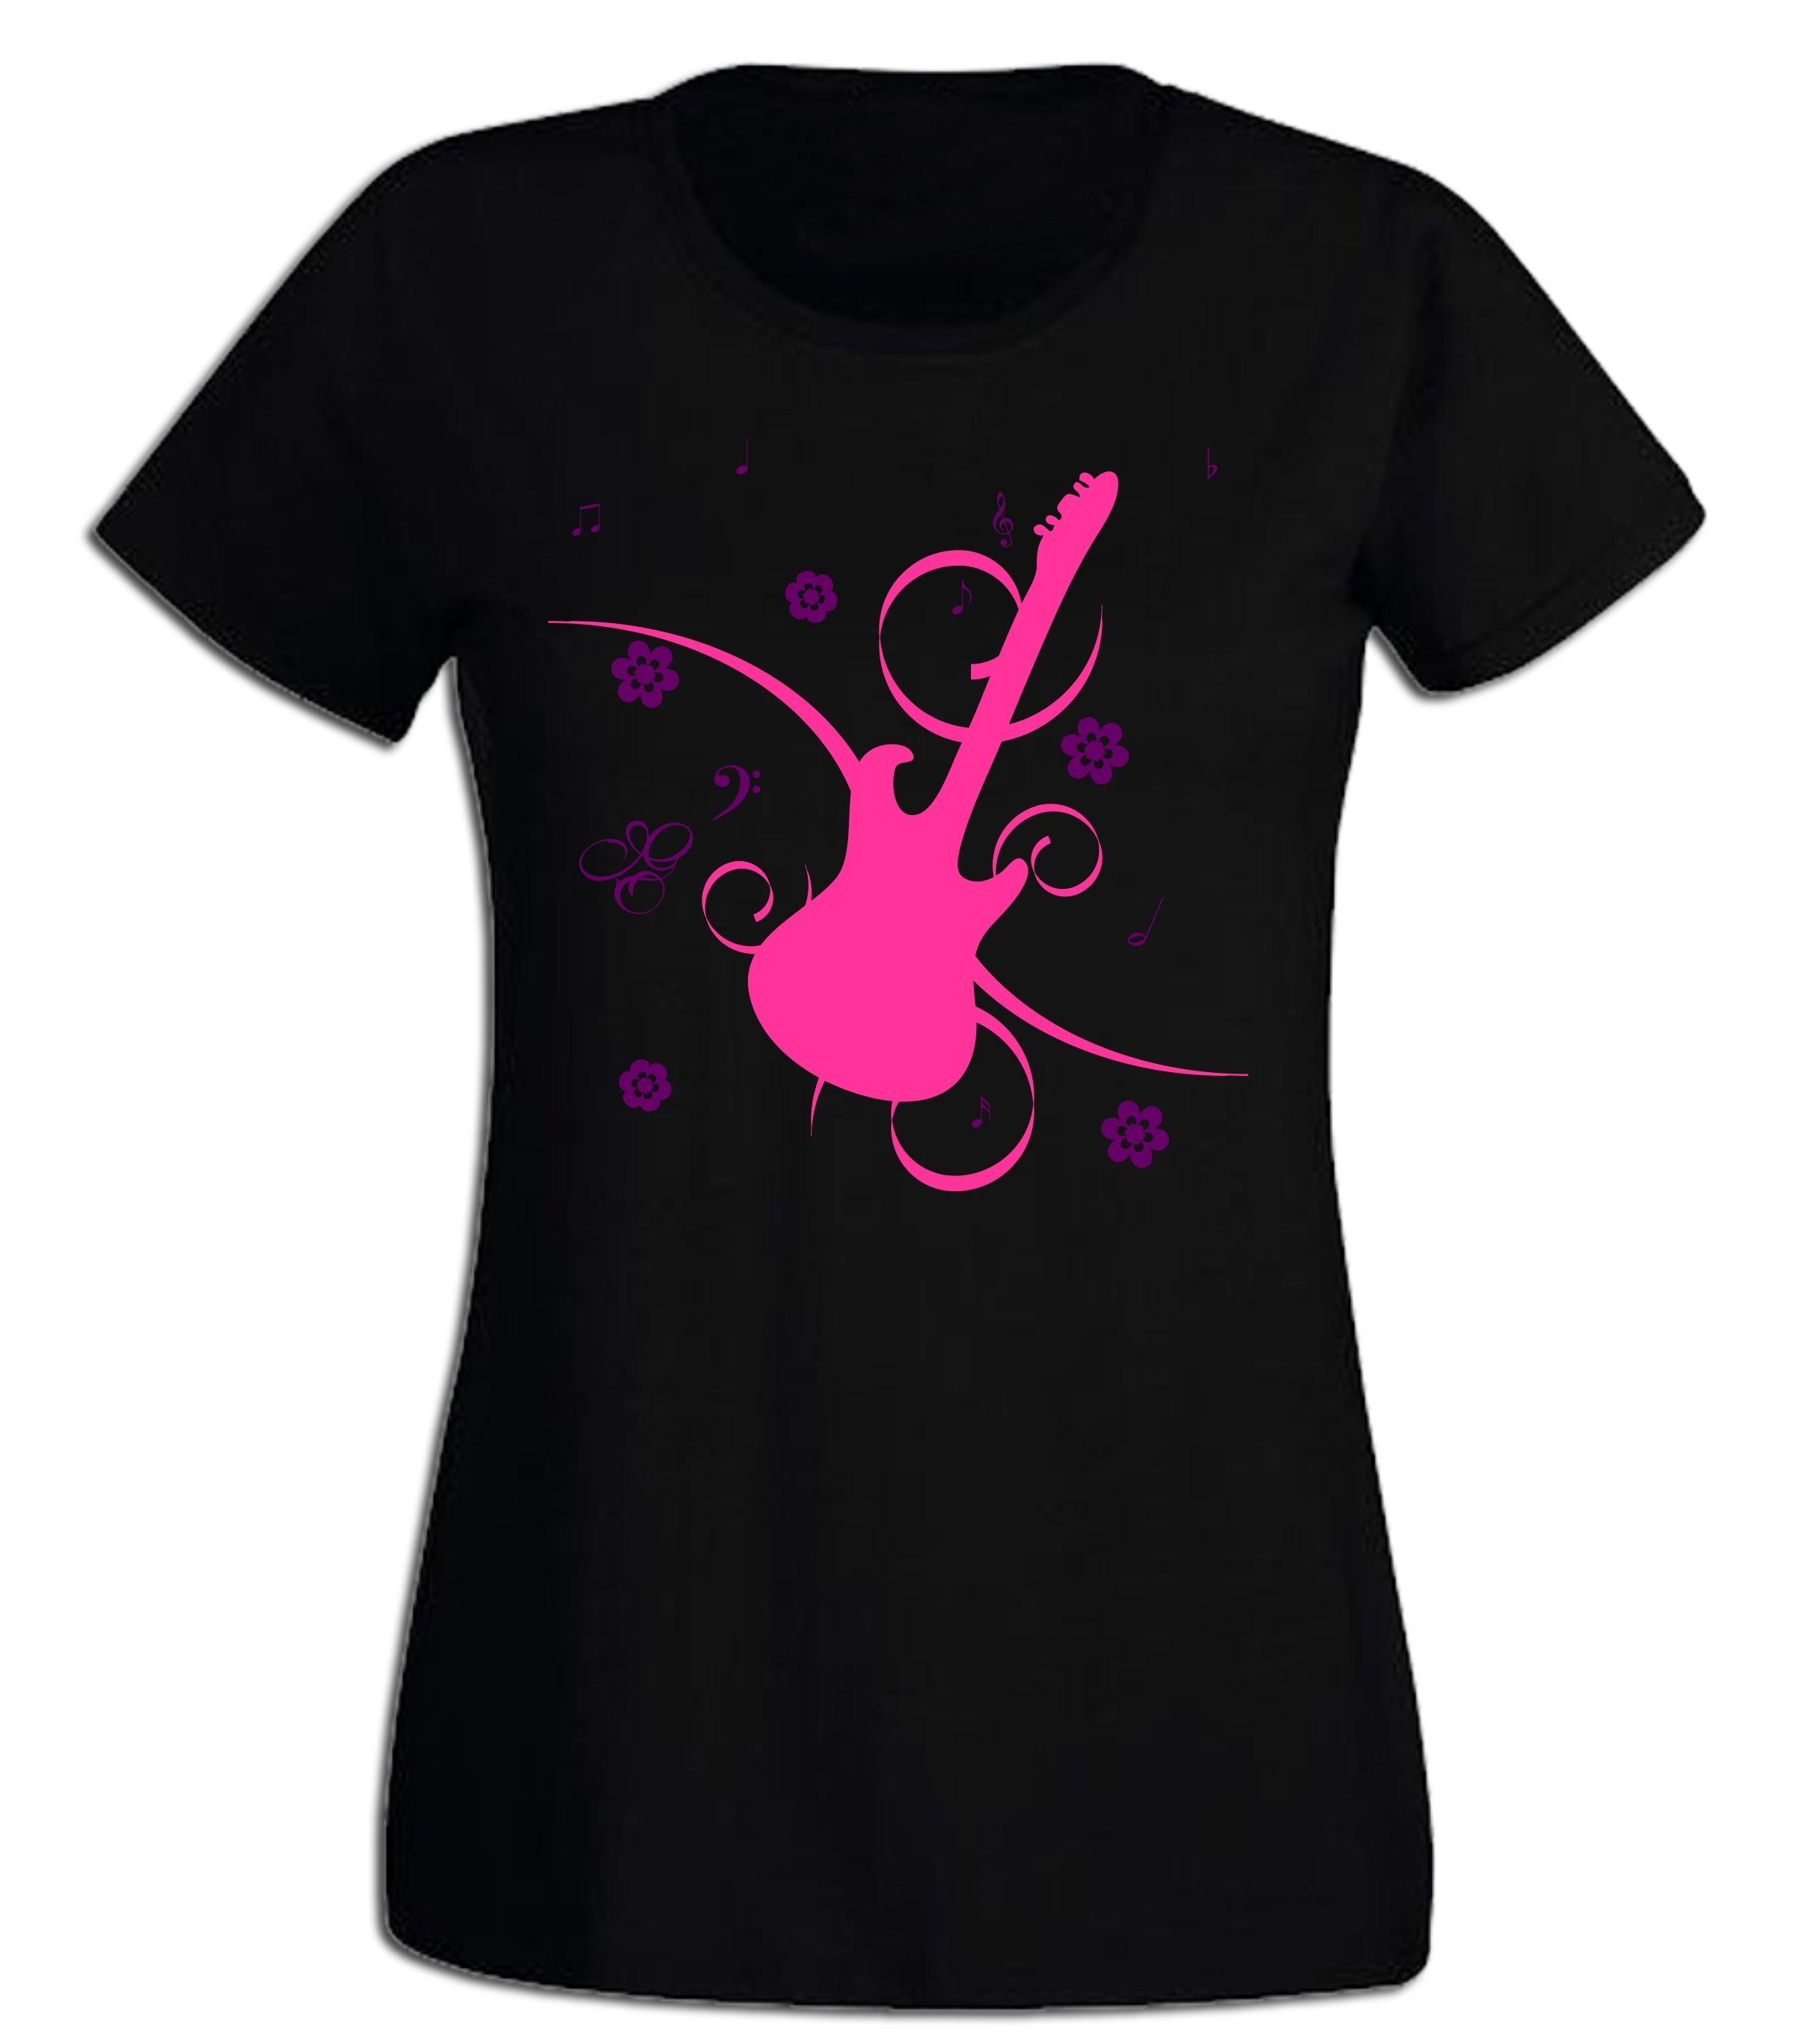 G-graphics T-Shirt Damen T-Shirt - Gitarre Pink-Purple-Collection, mit trendigem Frontprint, Slim-fit, Aufdruck auf der Vorderseite, Print/Motiv, für jung & alt